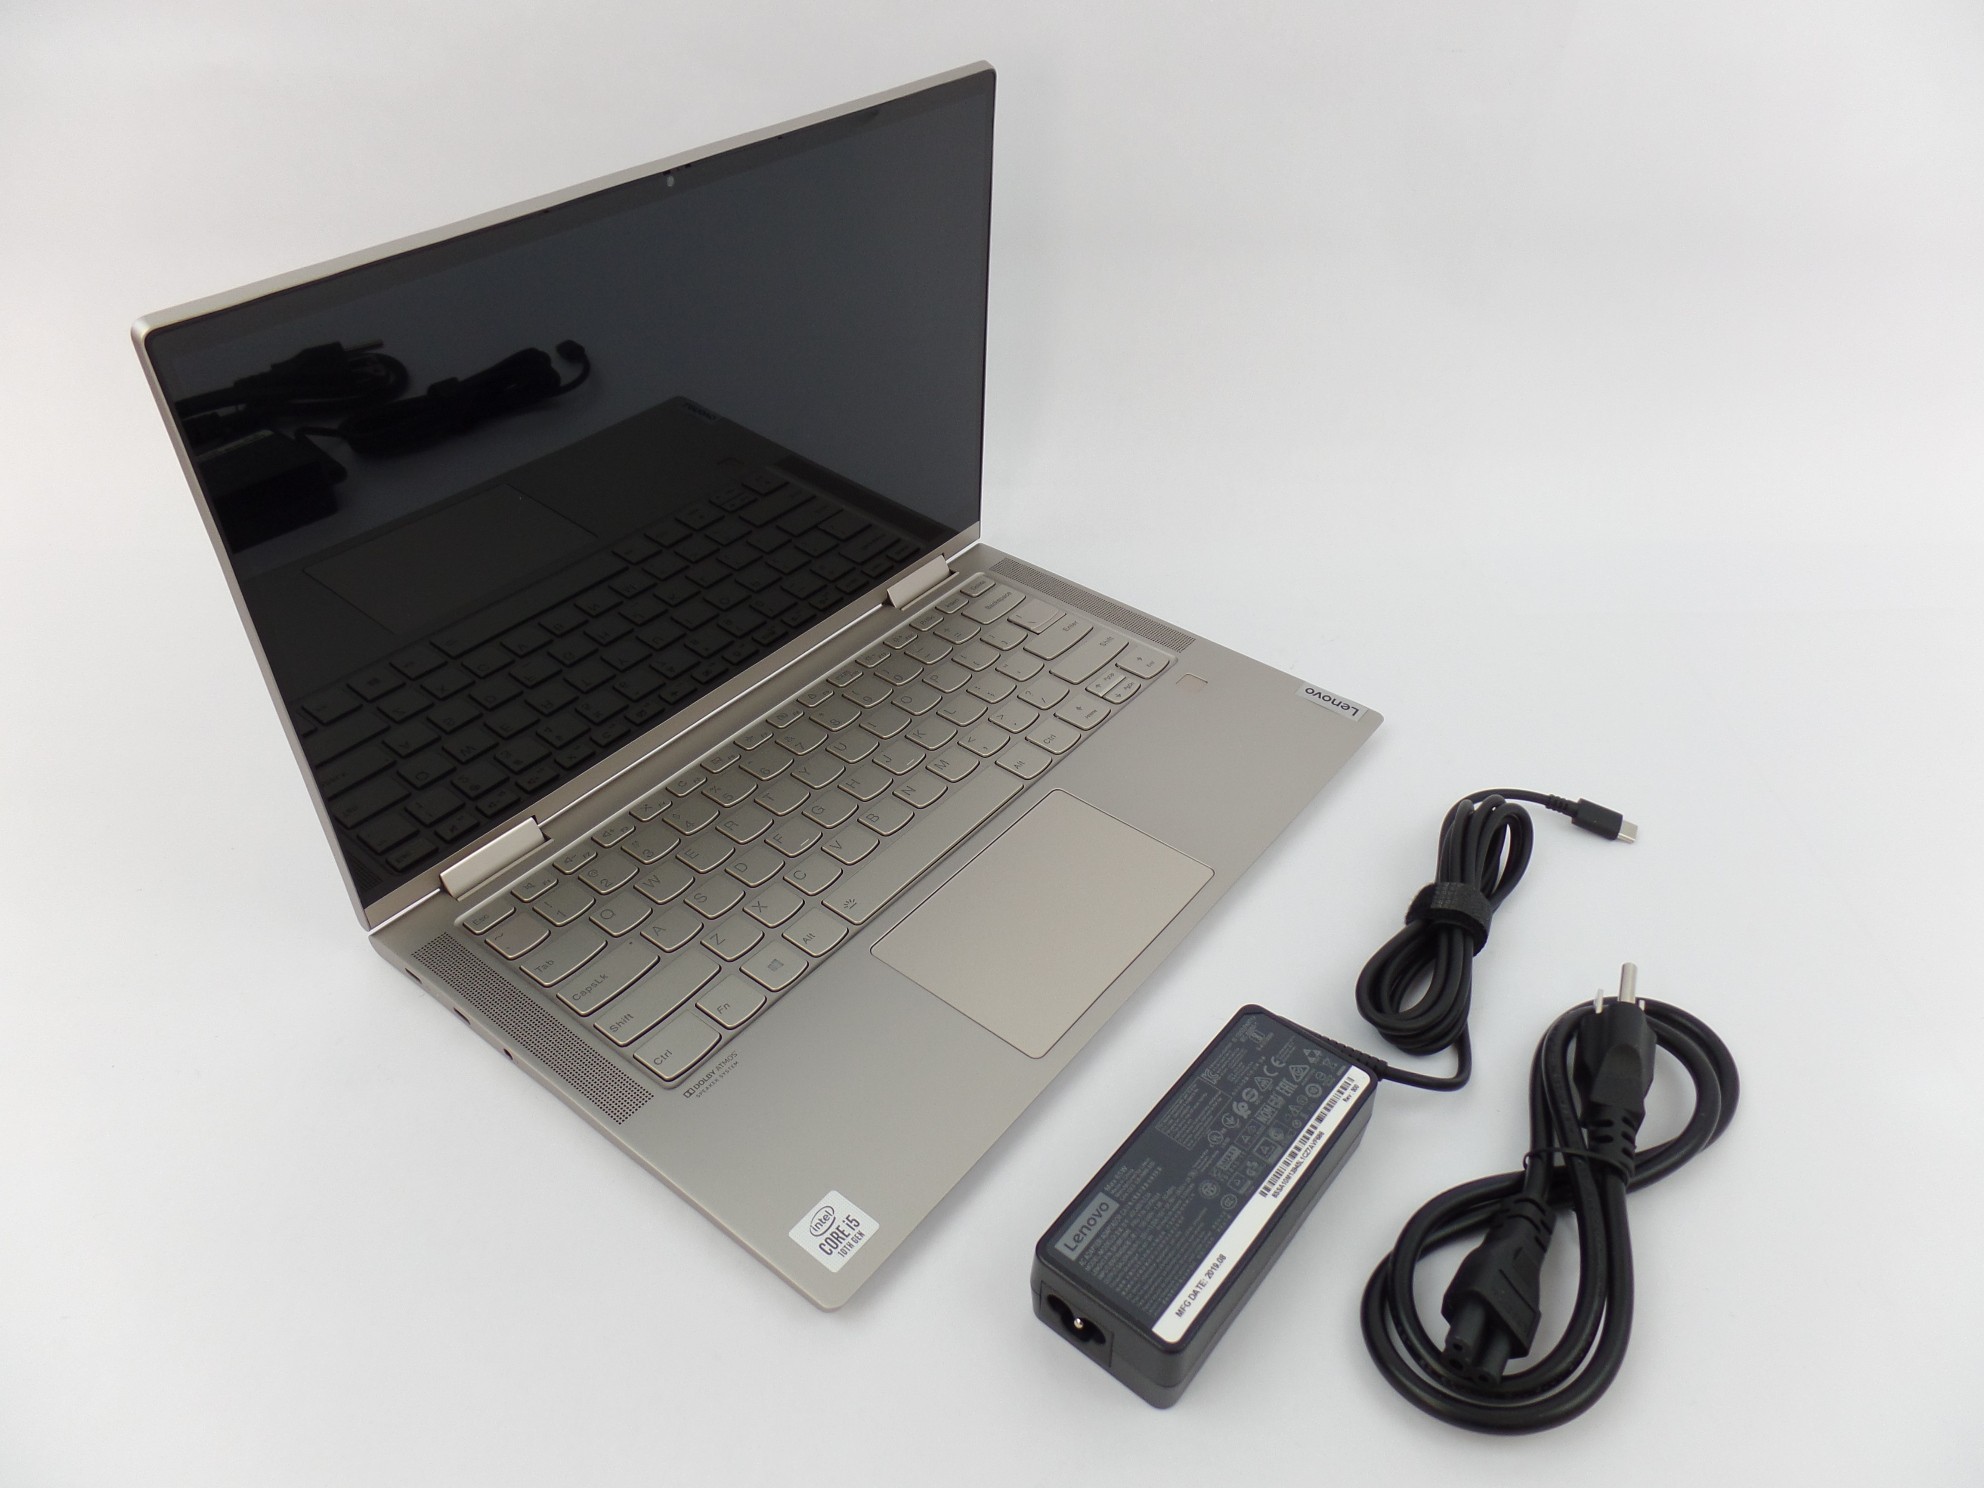 Lenovo Yoga C740-14IML 14" FHD Touch i5-10210U 1.6GH 8GB 256GB W10 2in1 Laptop